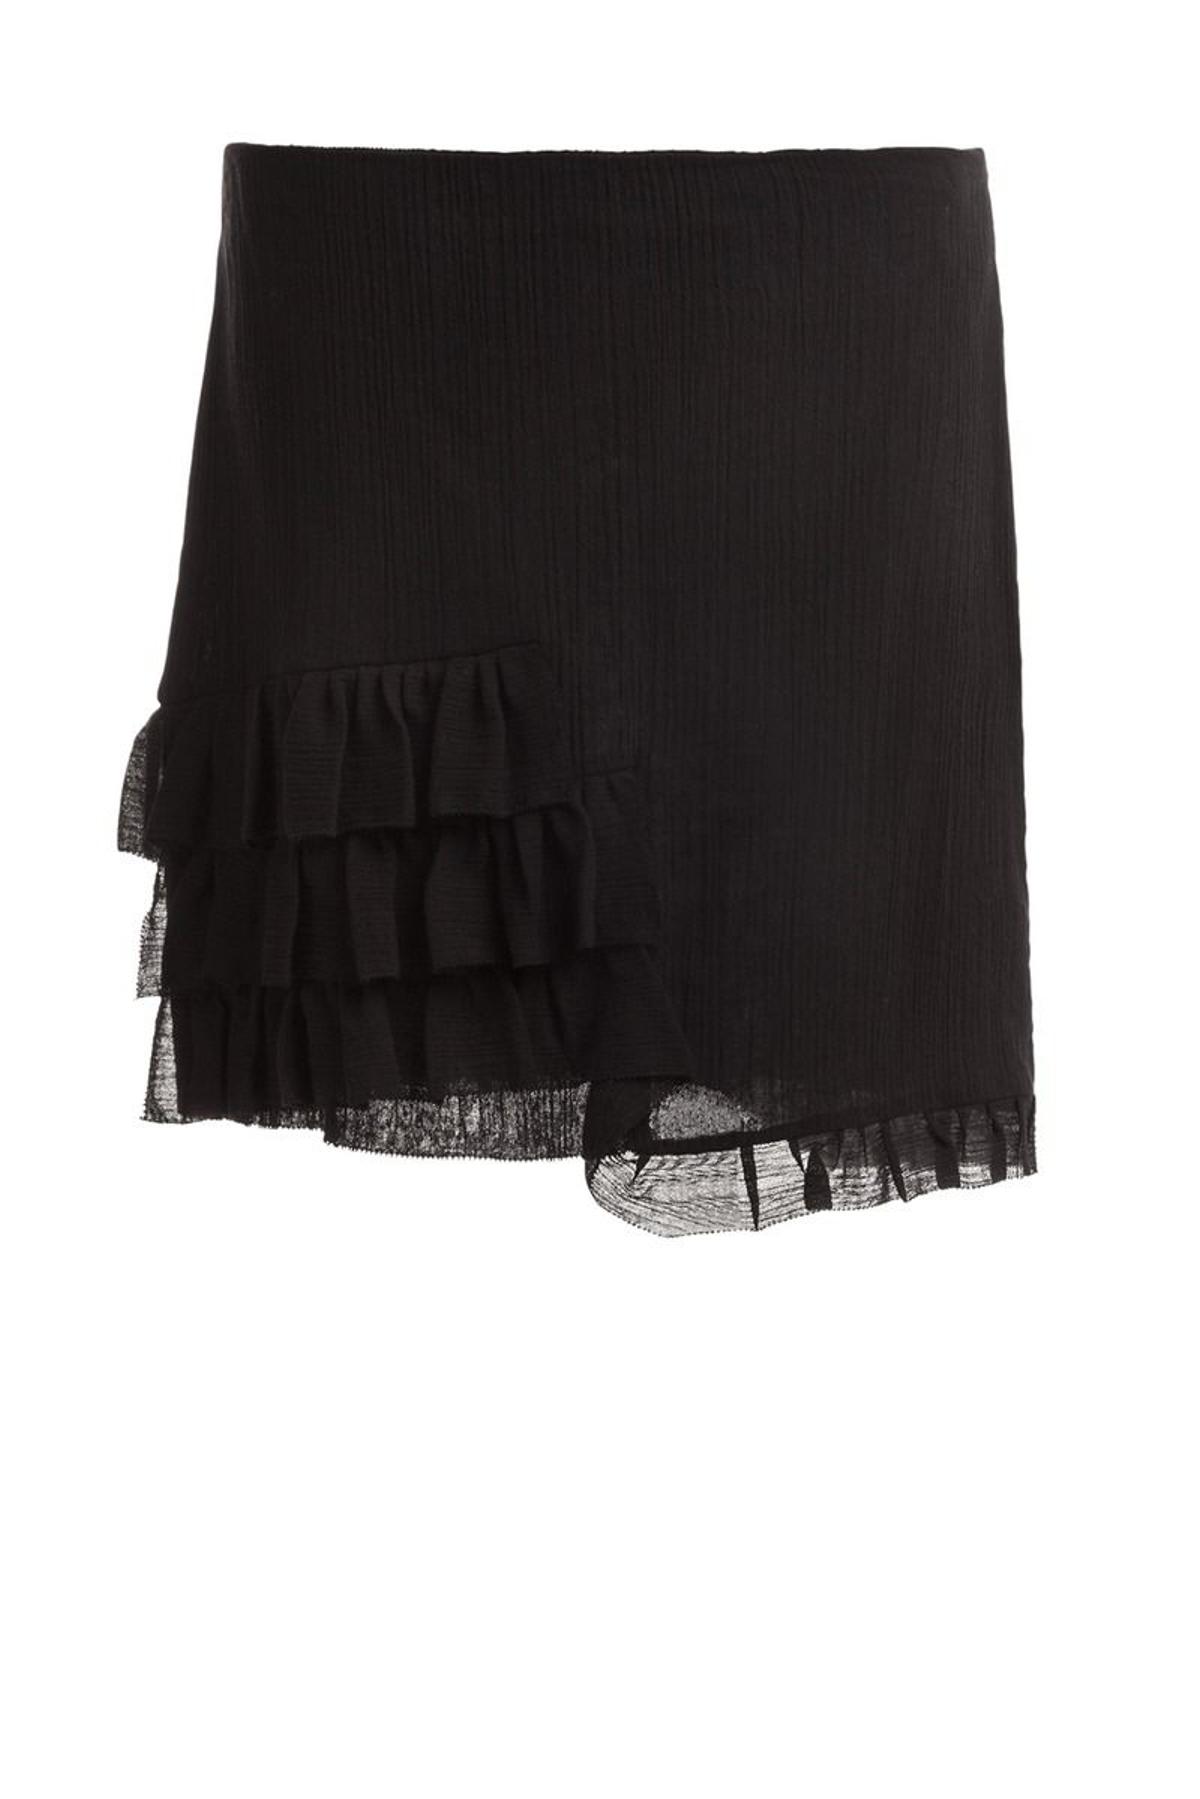 Compras en las rebajas Mid Season: minifalda negra con volantes